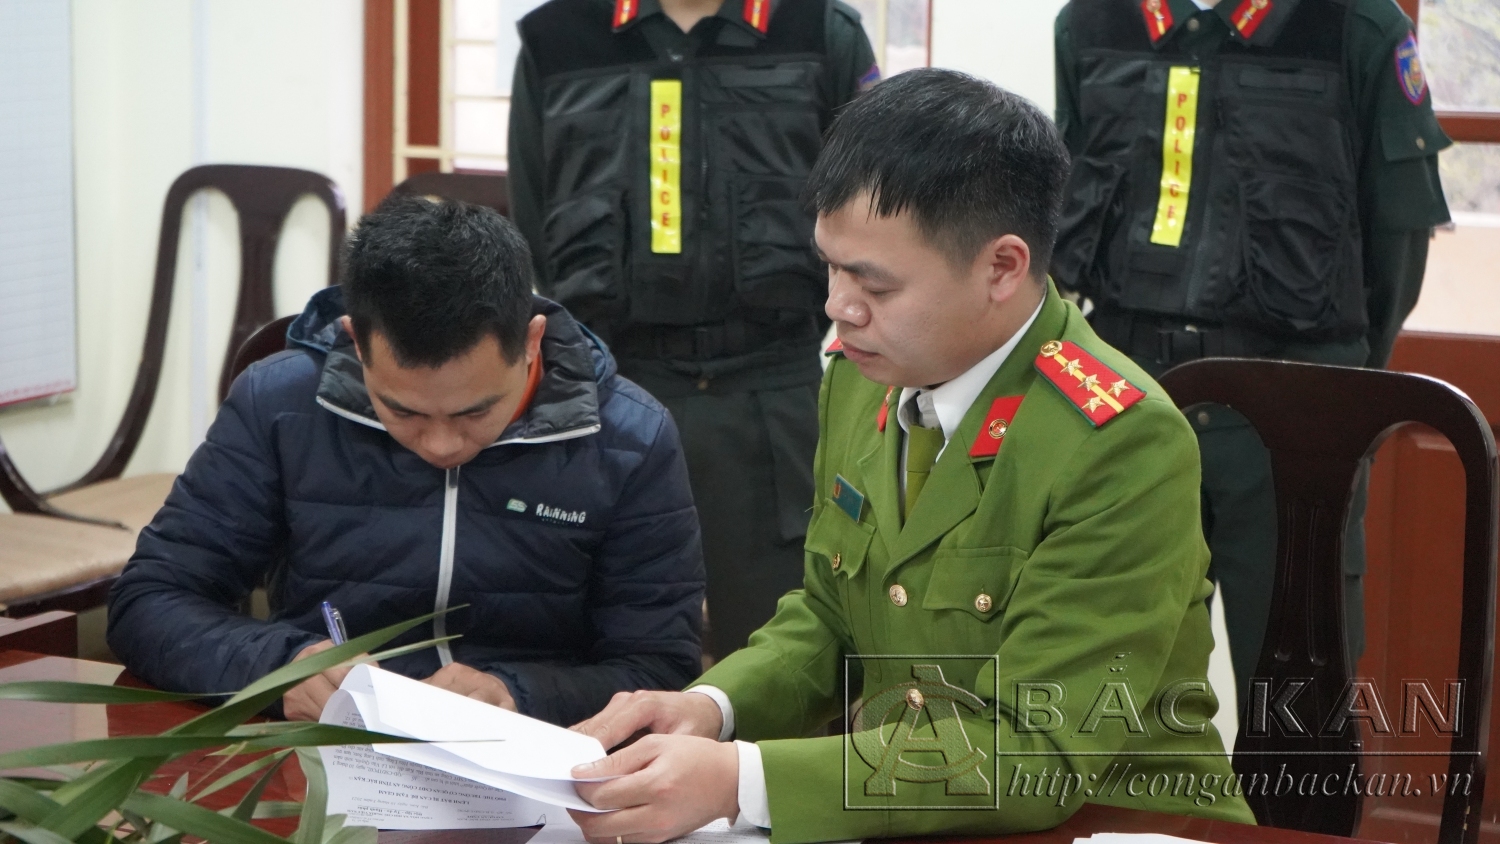   Đối tượng Lê Văn Quyên bị khởi tố về hành vi mua bán người dưới 16 tuổi.